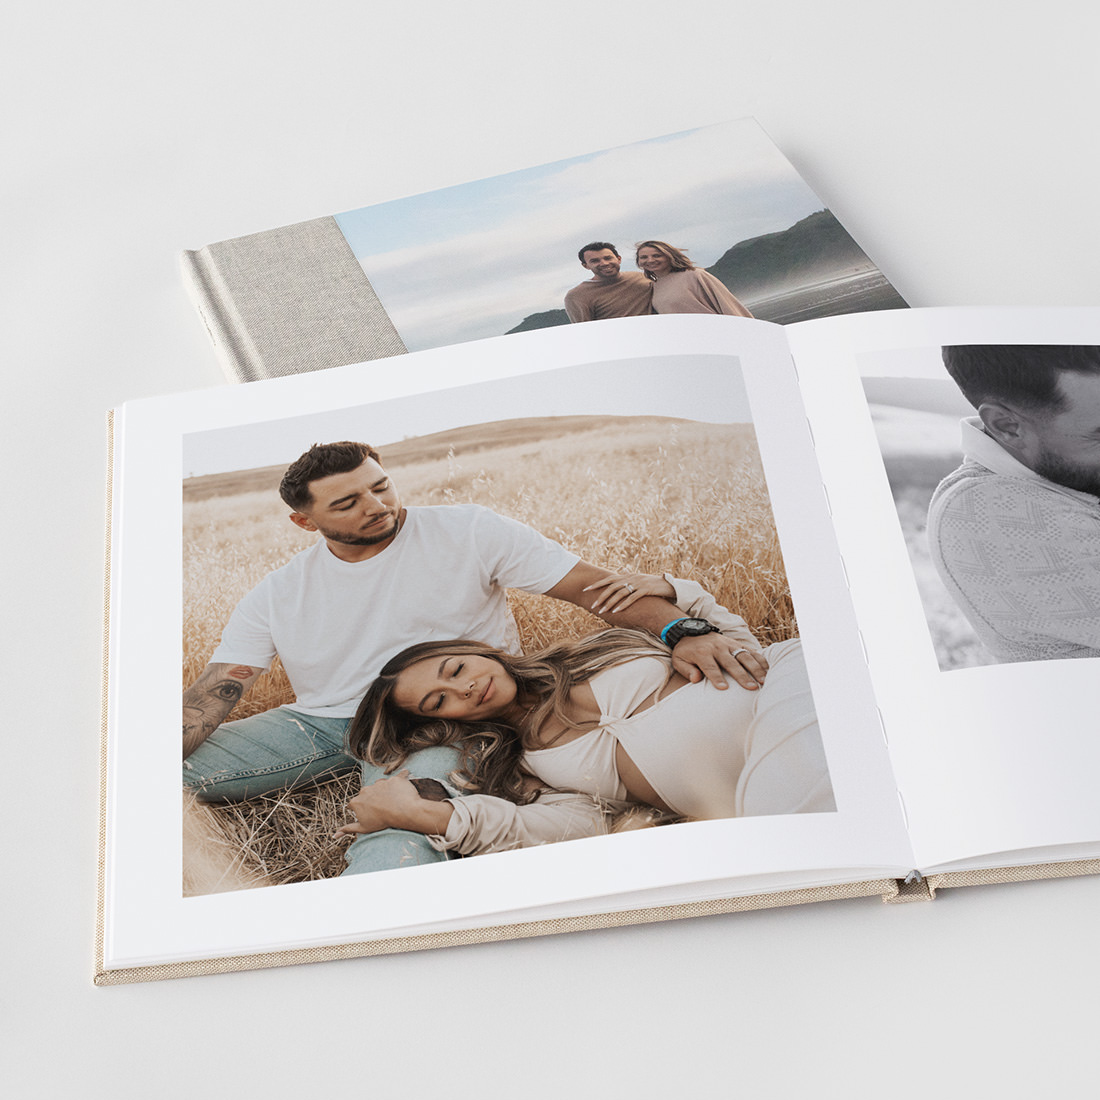 Premium Photo Books - High Quality Photo Books - MILK Books